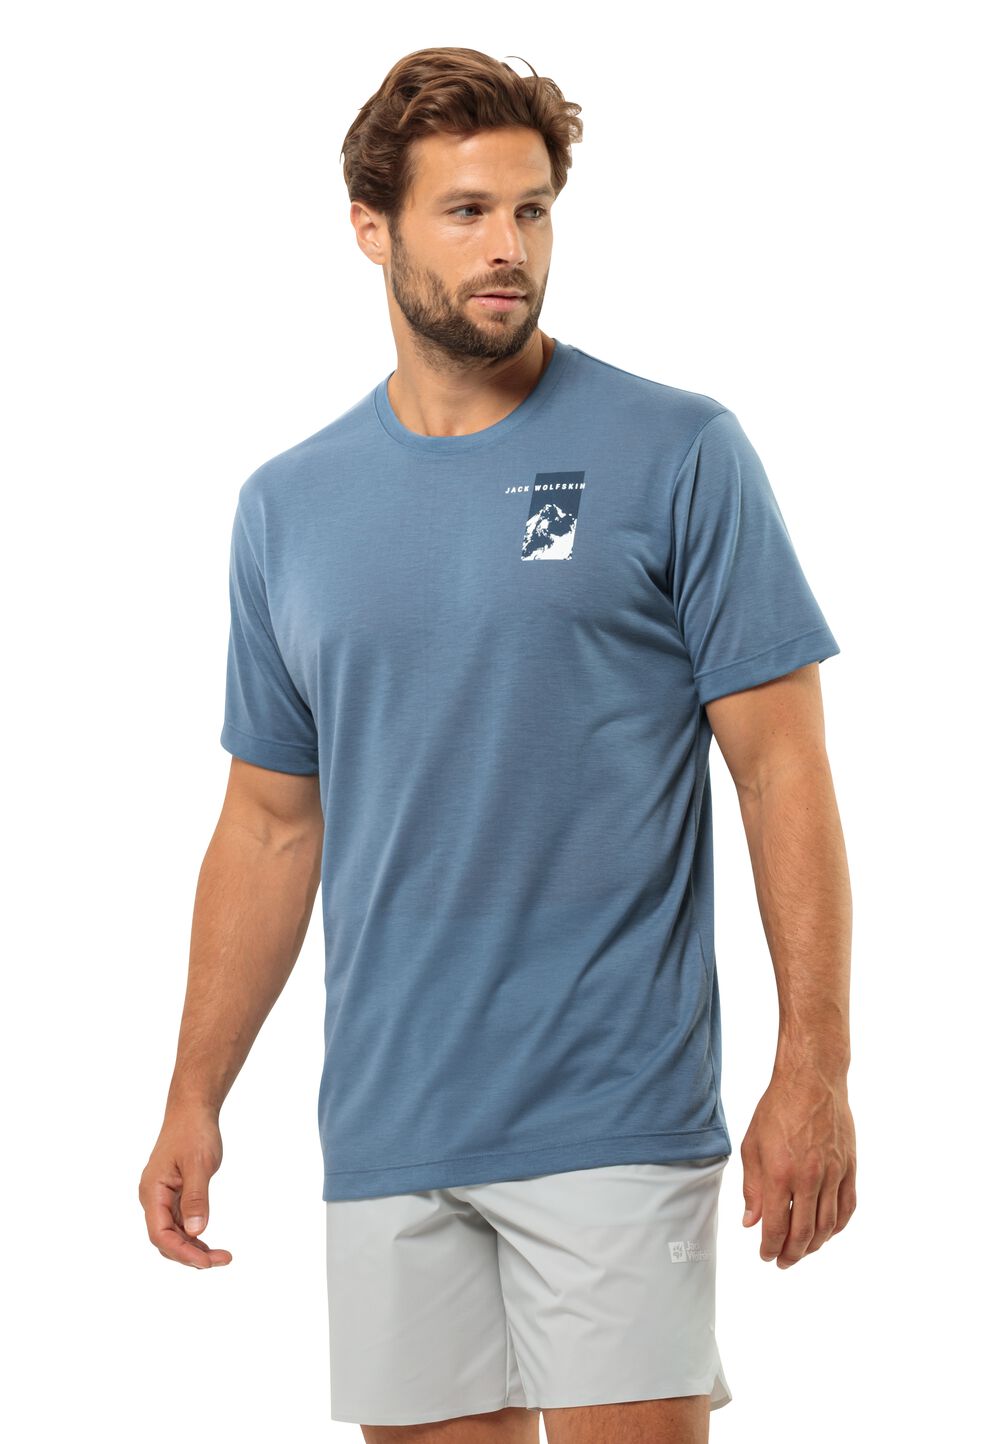 Jack Wolfskin Vonnan S S Graphic T-Shirt Men Functioneel shirt Heren XXL elemental blue elemental blue